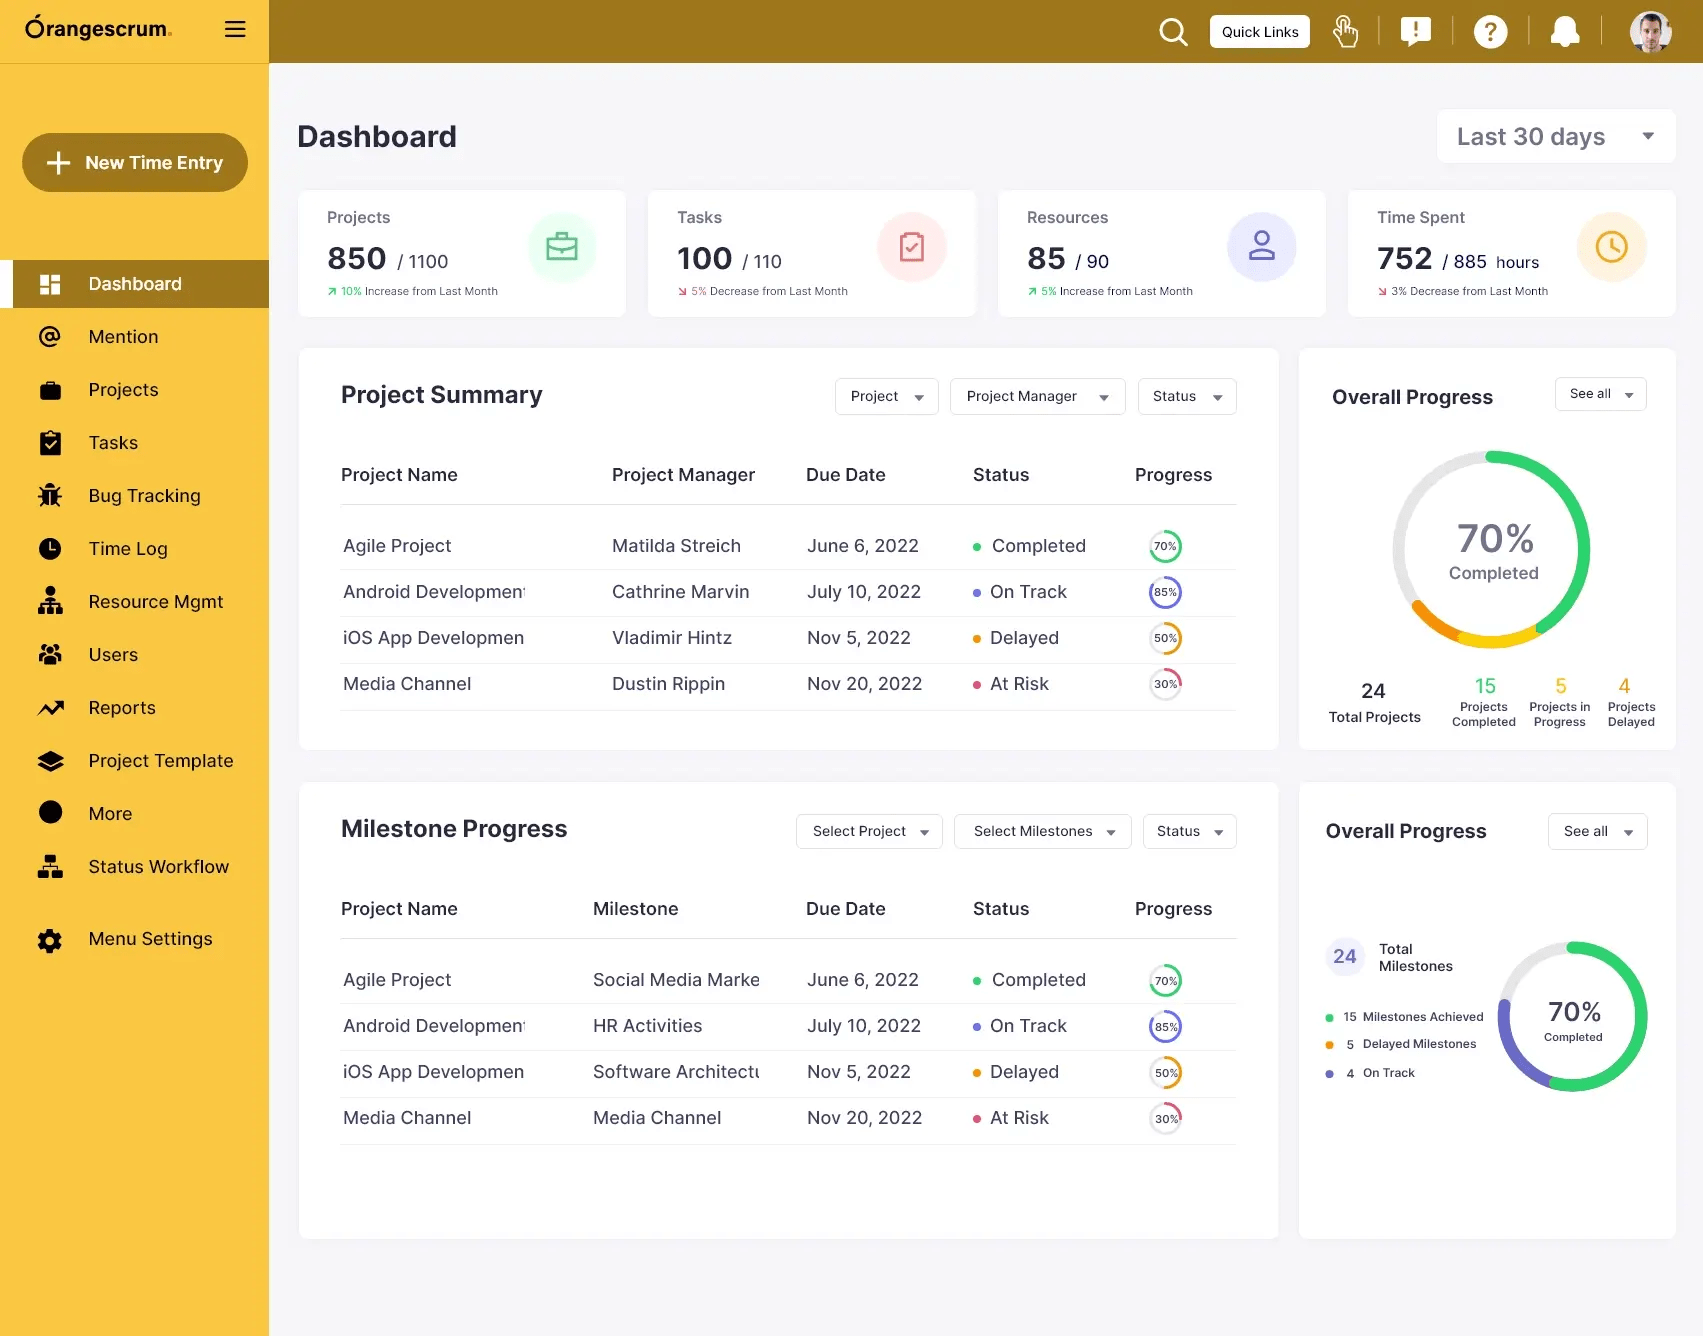 Screenshot Orangescrum dashboard